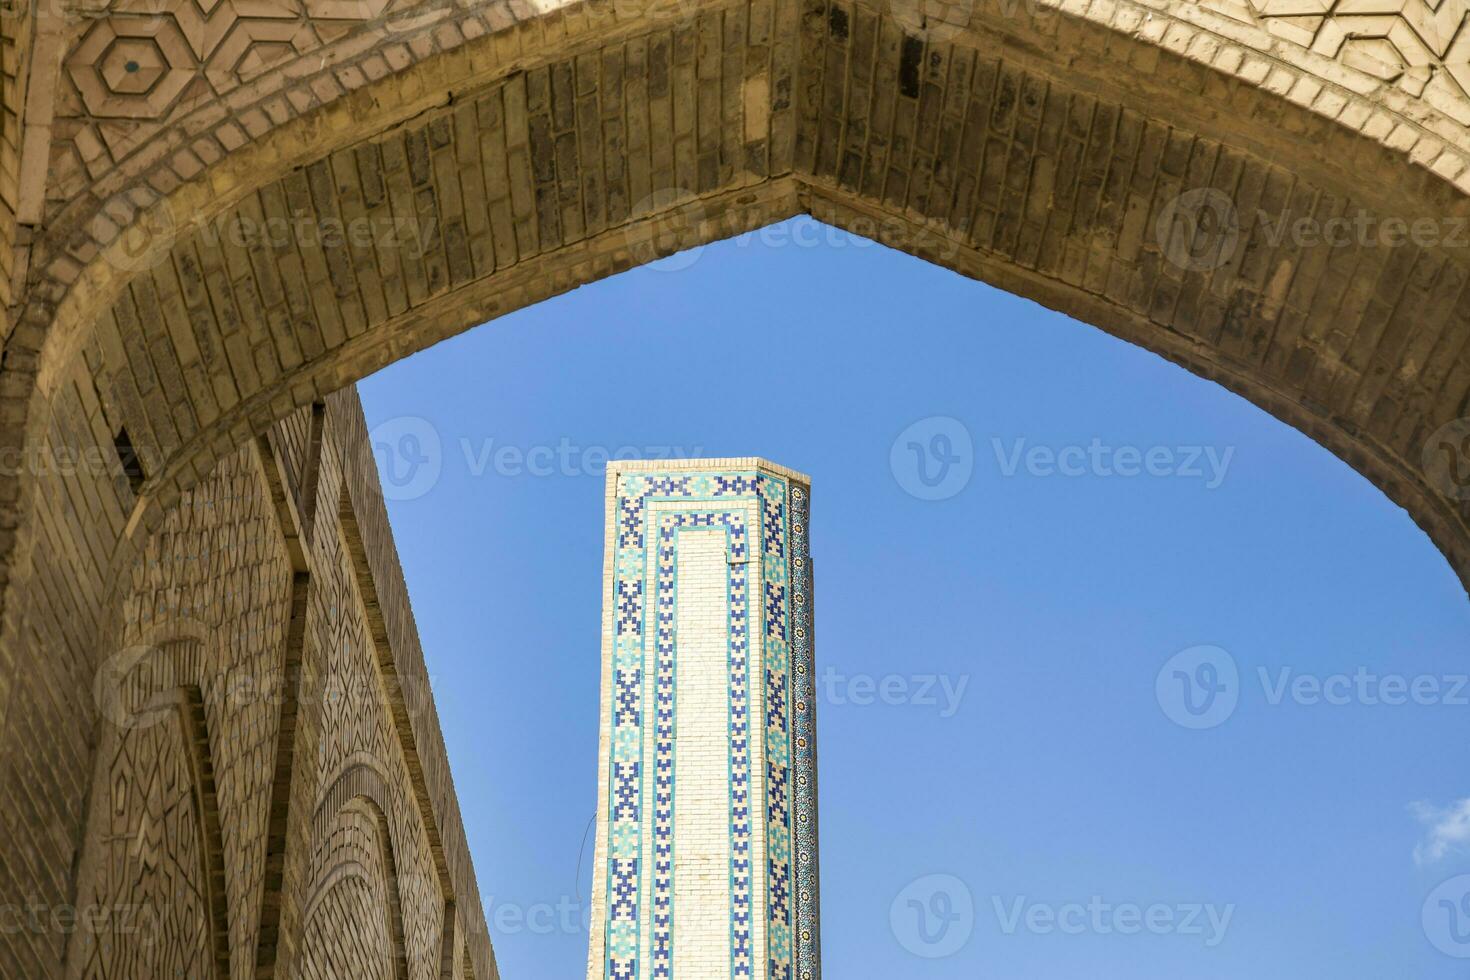 edificio detalles. el mezquita kalyan. uno de el más antiguo y mas grande mezquita en central Asia. principal catedral mezquita de Bujara foto